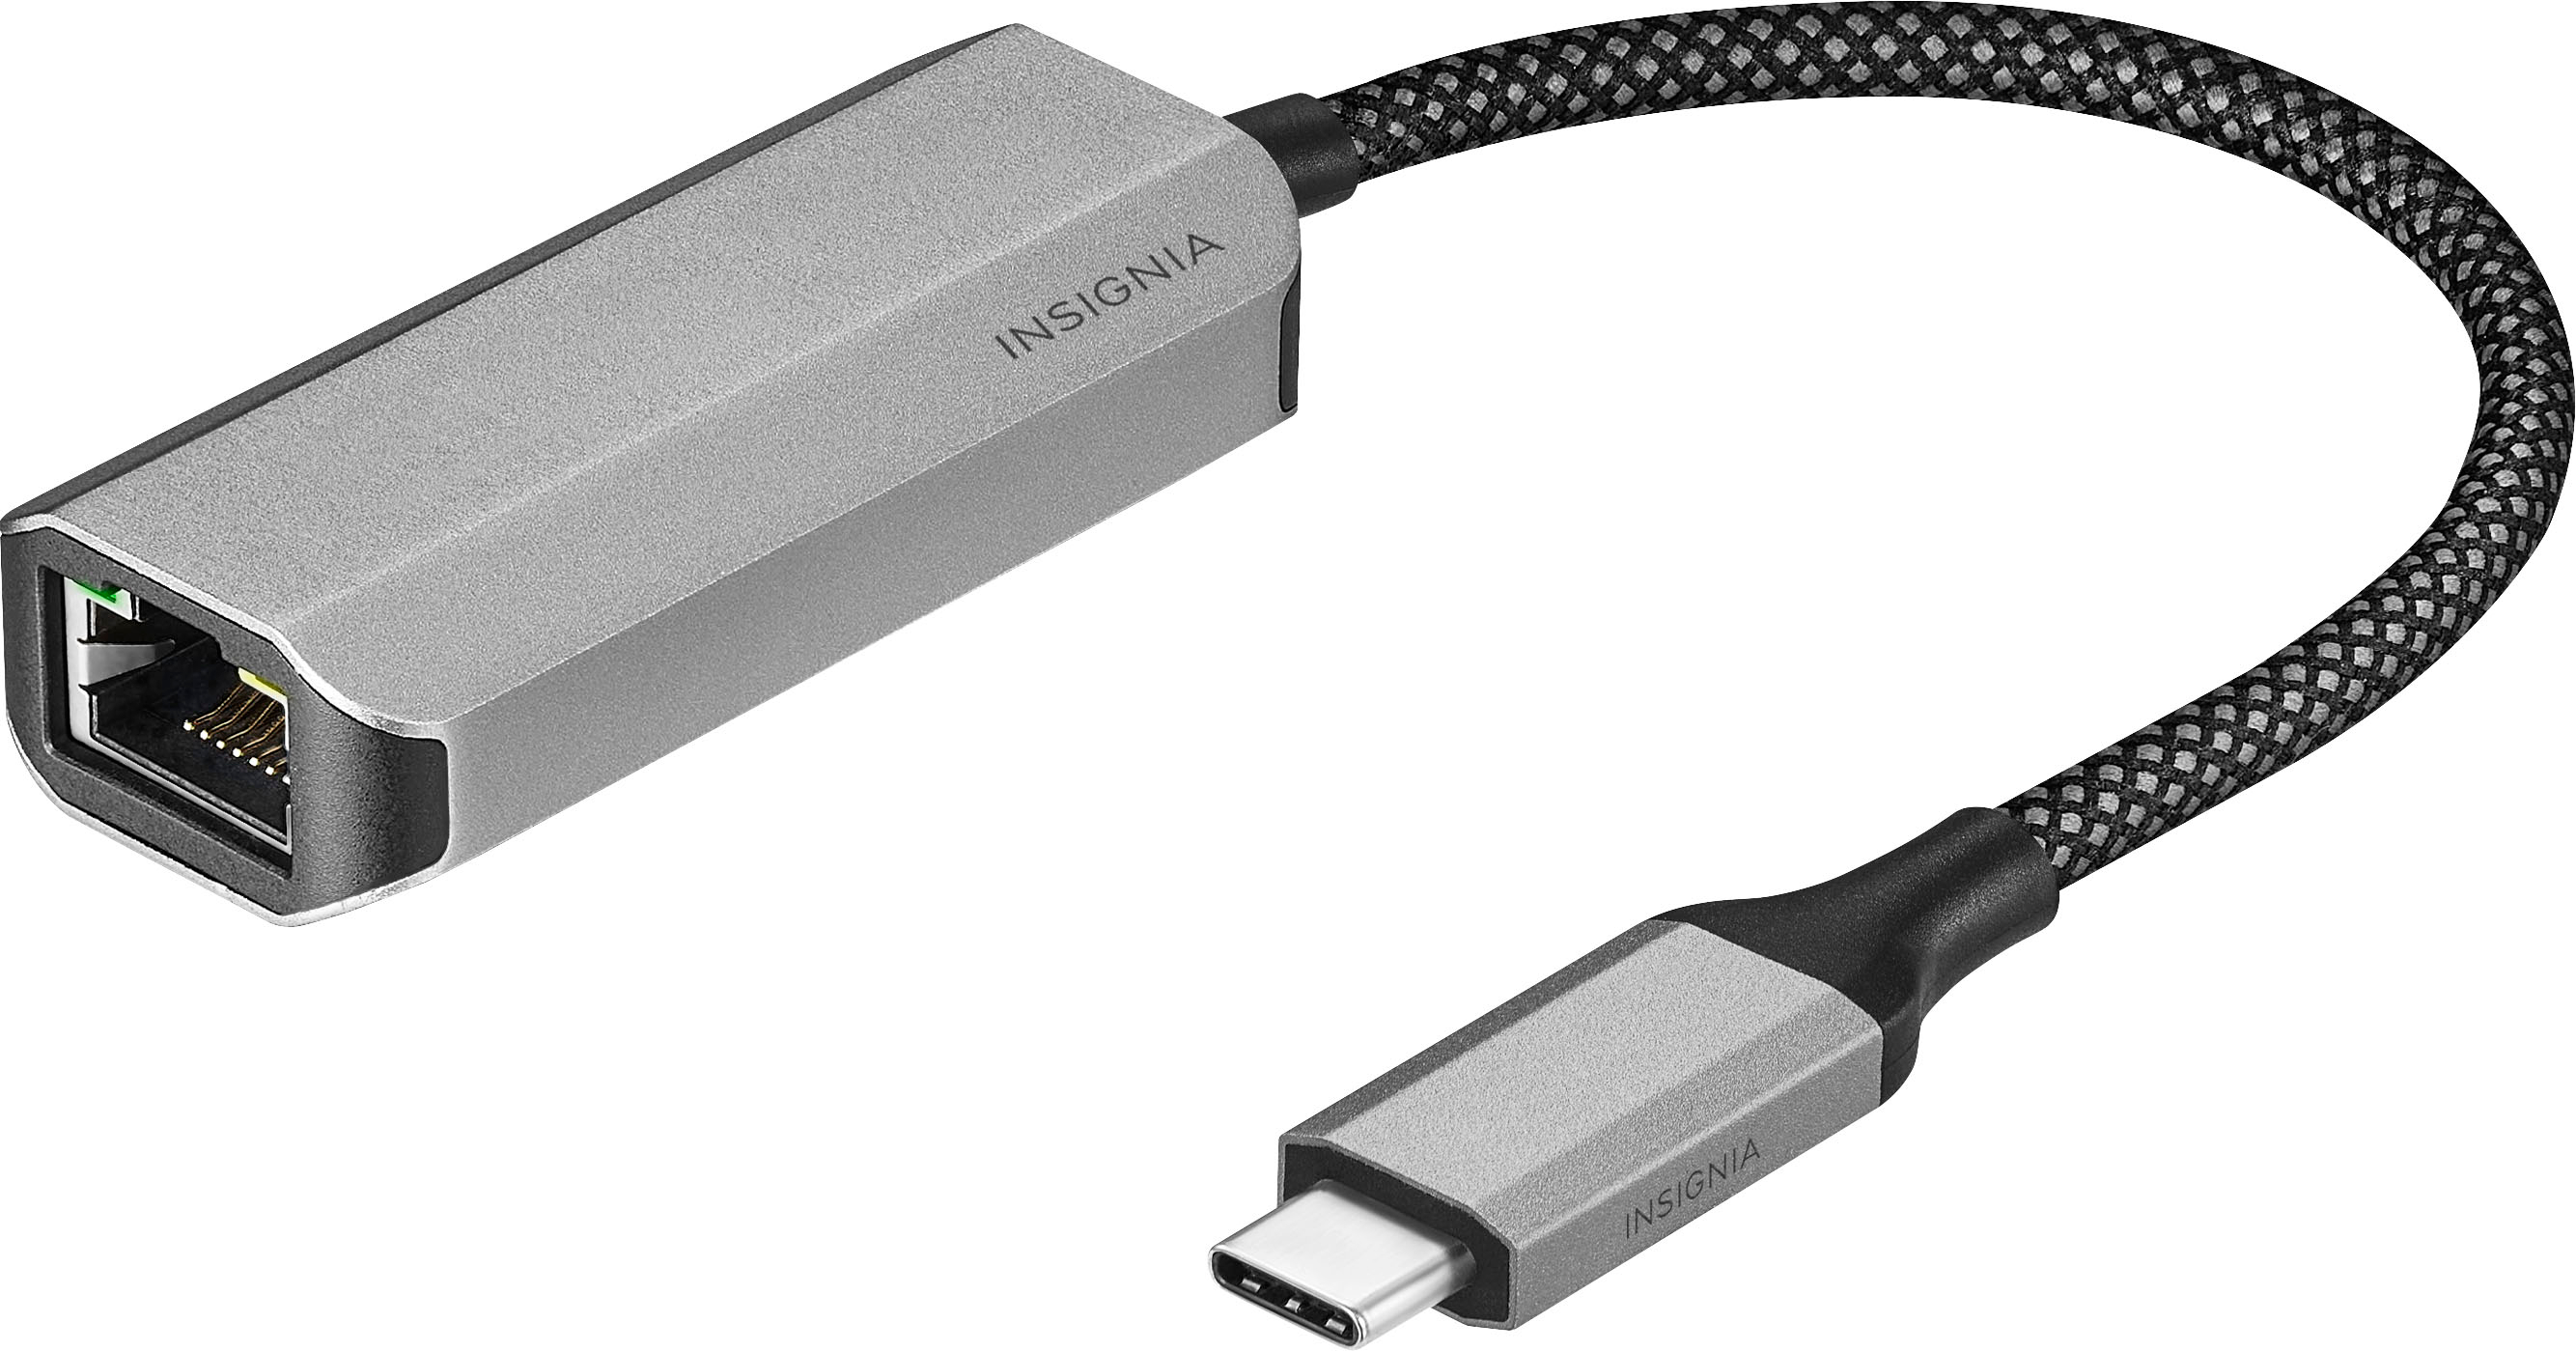 Nouveau Convertisseur Adaptateur Micro USB vers HDMI TV pour Smartphone